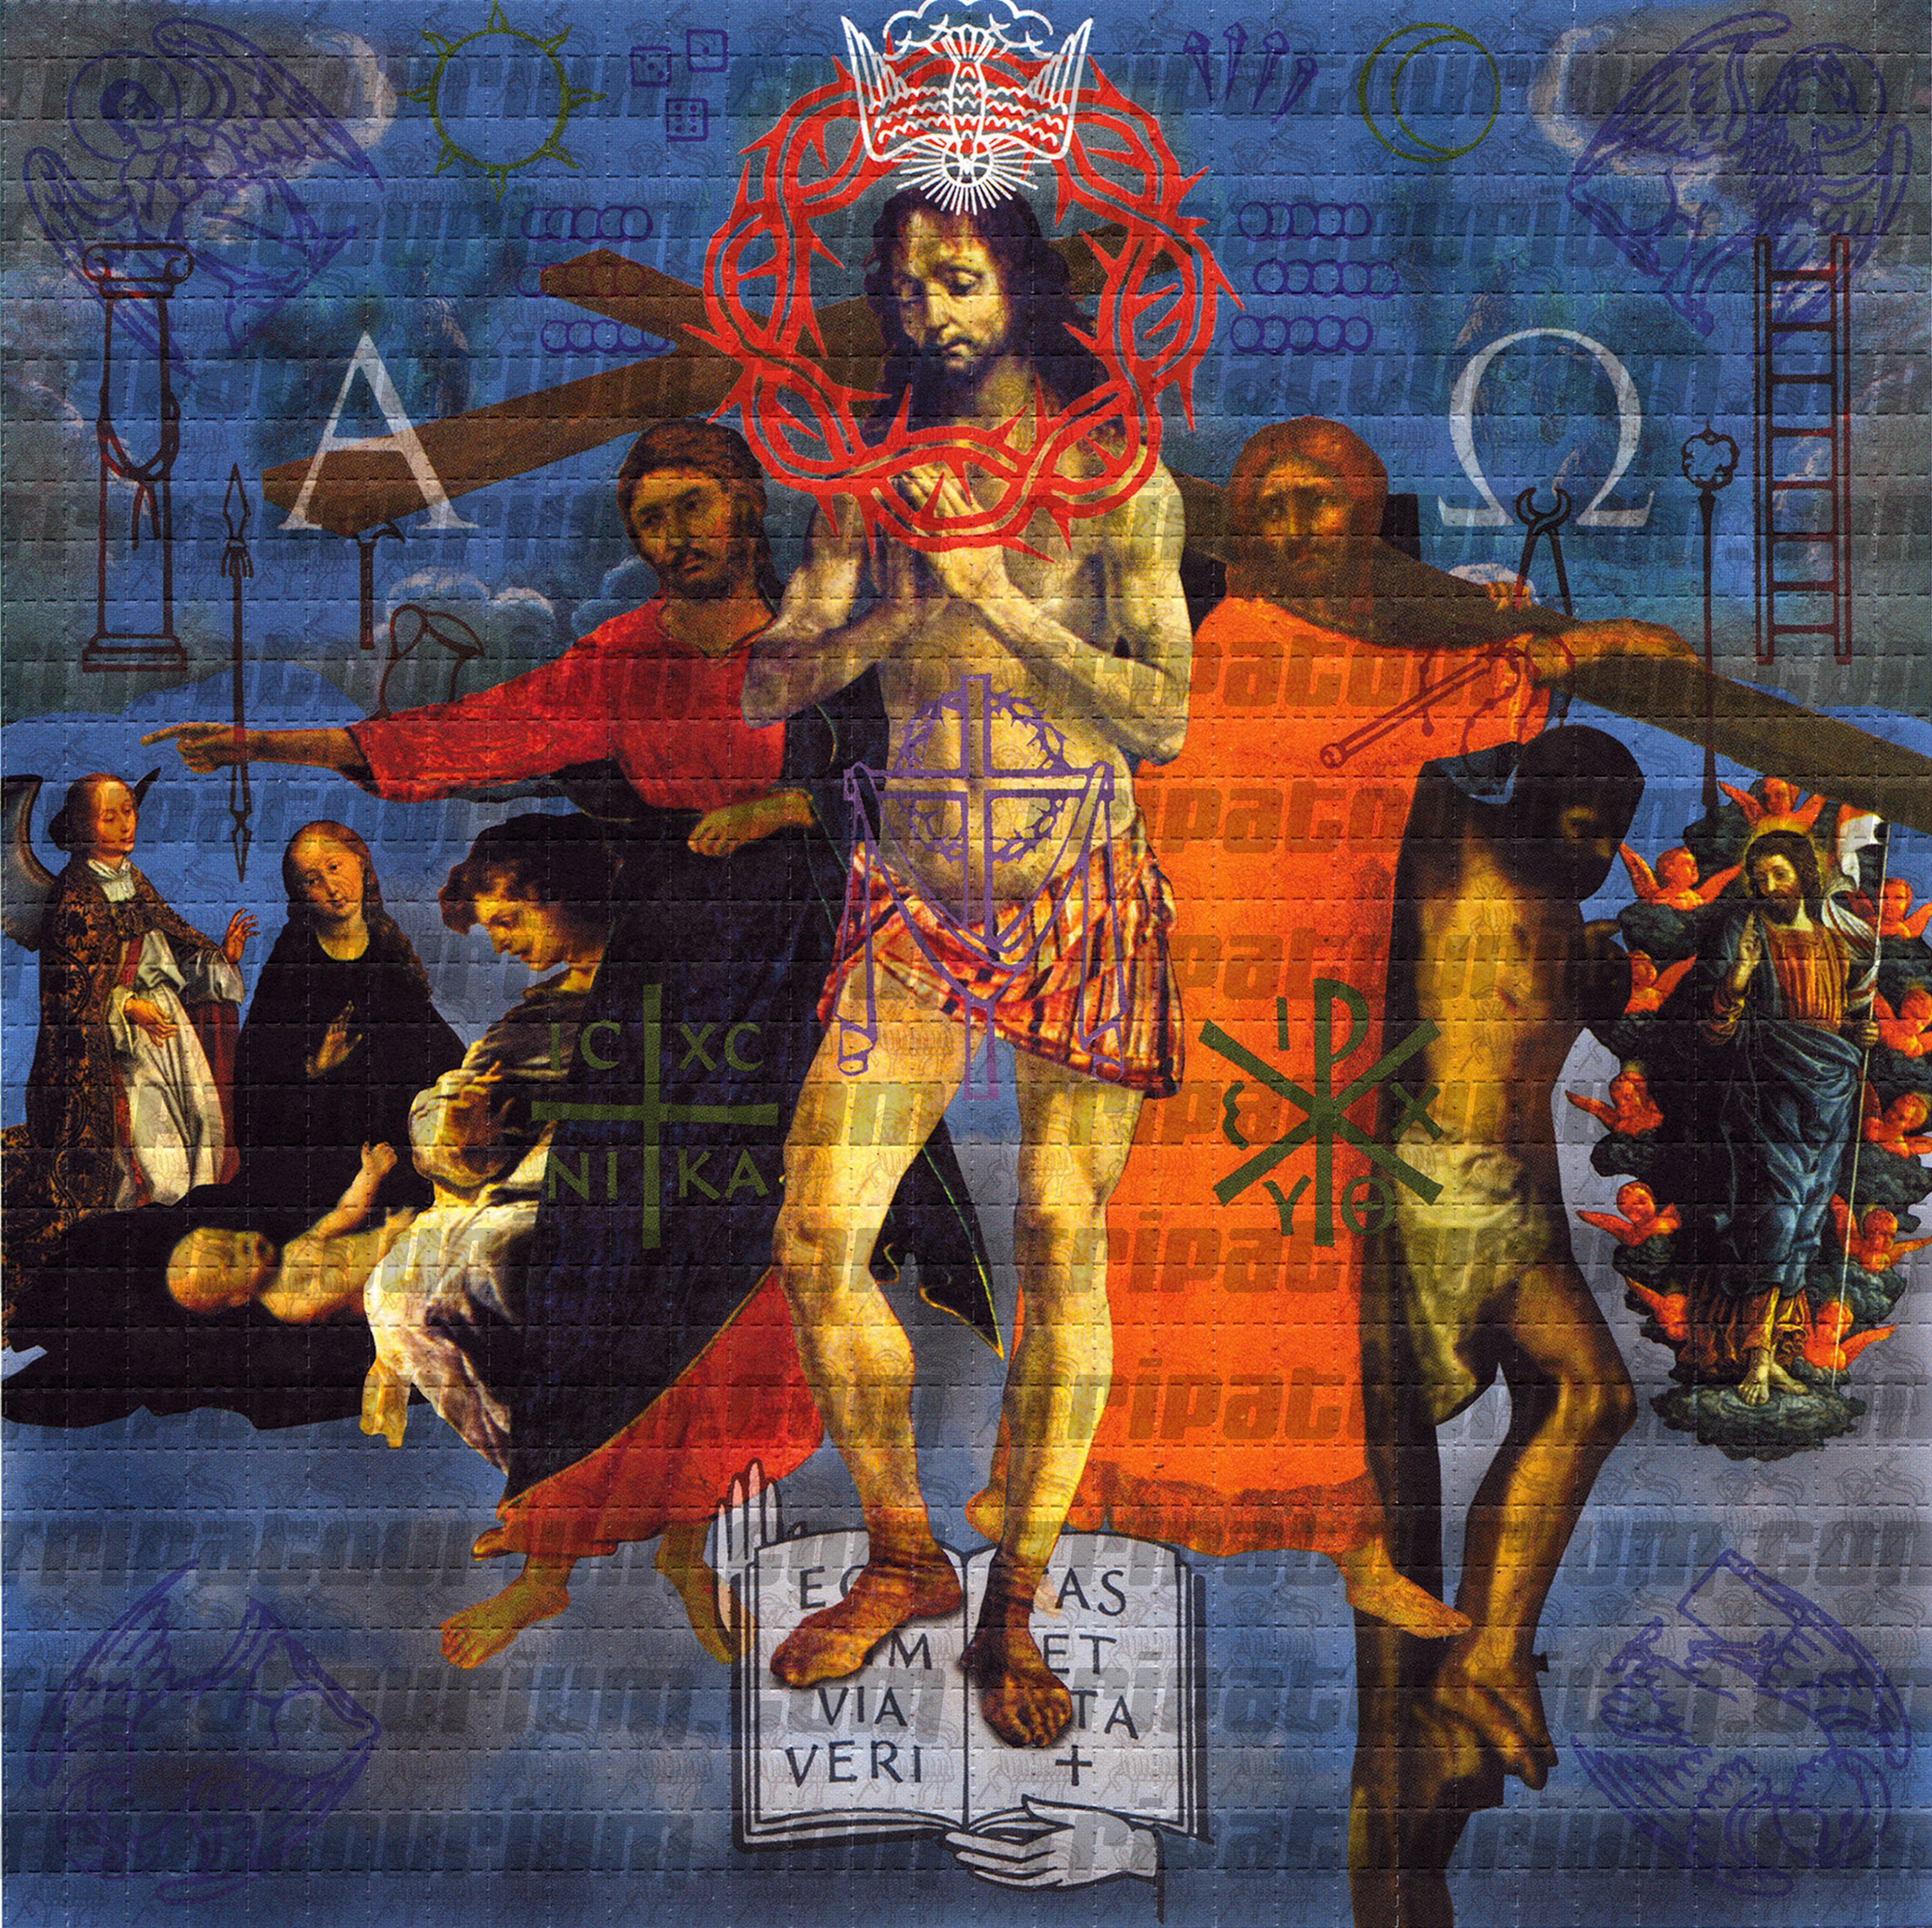 A scan of the LSD Blotter Art Print Jesus by Rev. Samuel